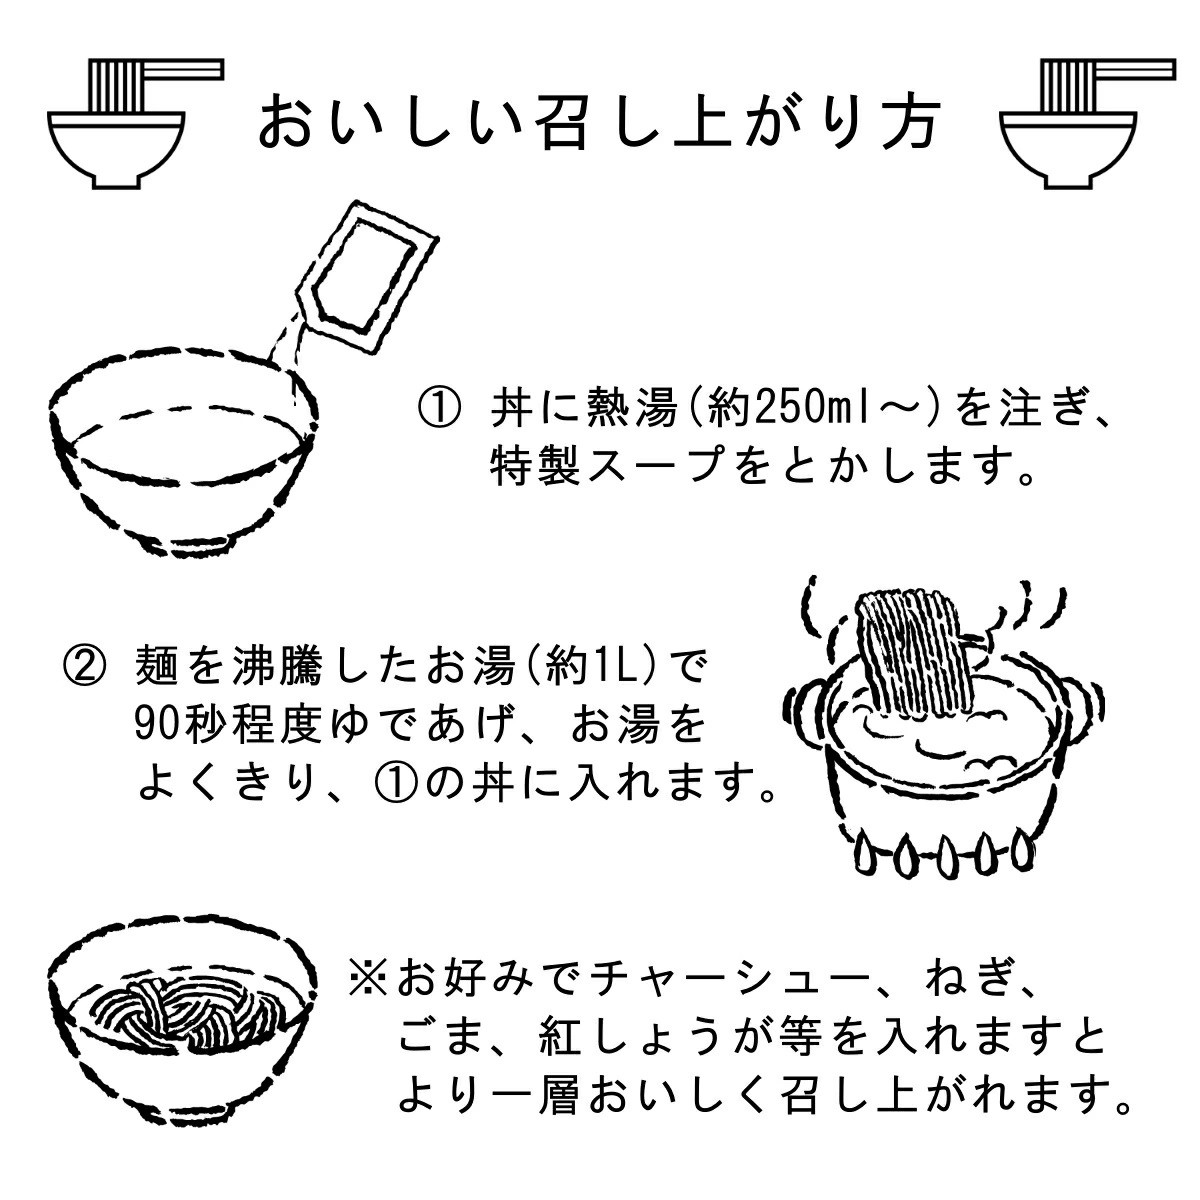 半生細麺 豚骨ラーメン 博多豚骨味 6食 福岡県 太宰府市 拉麺 とんこつ